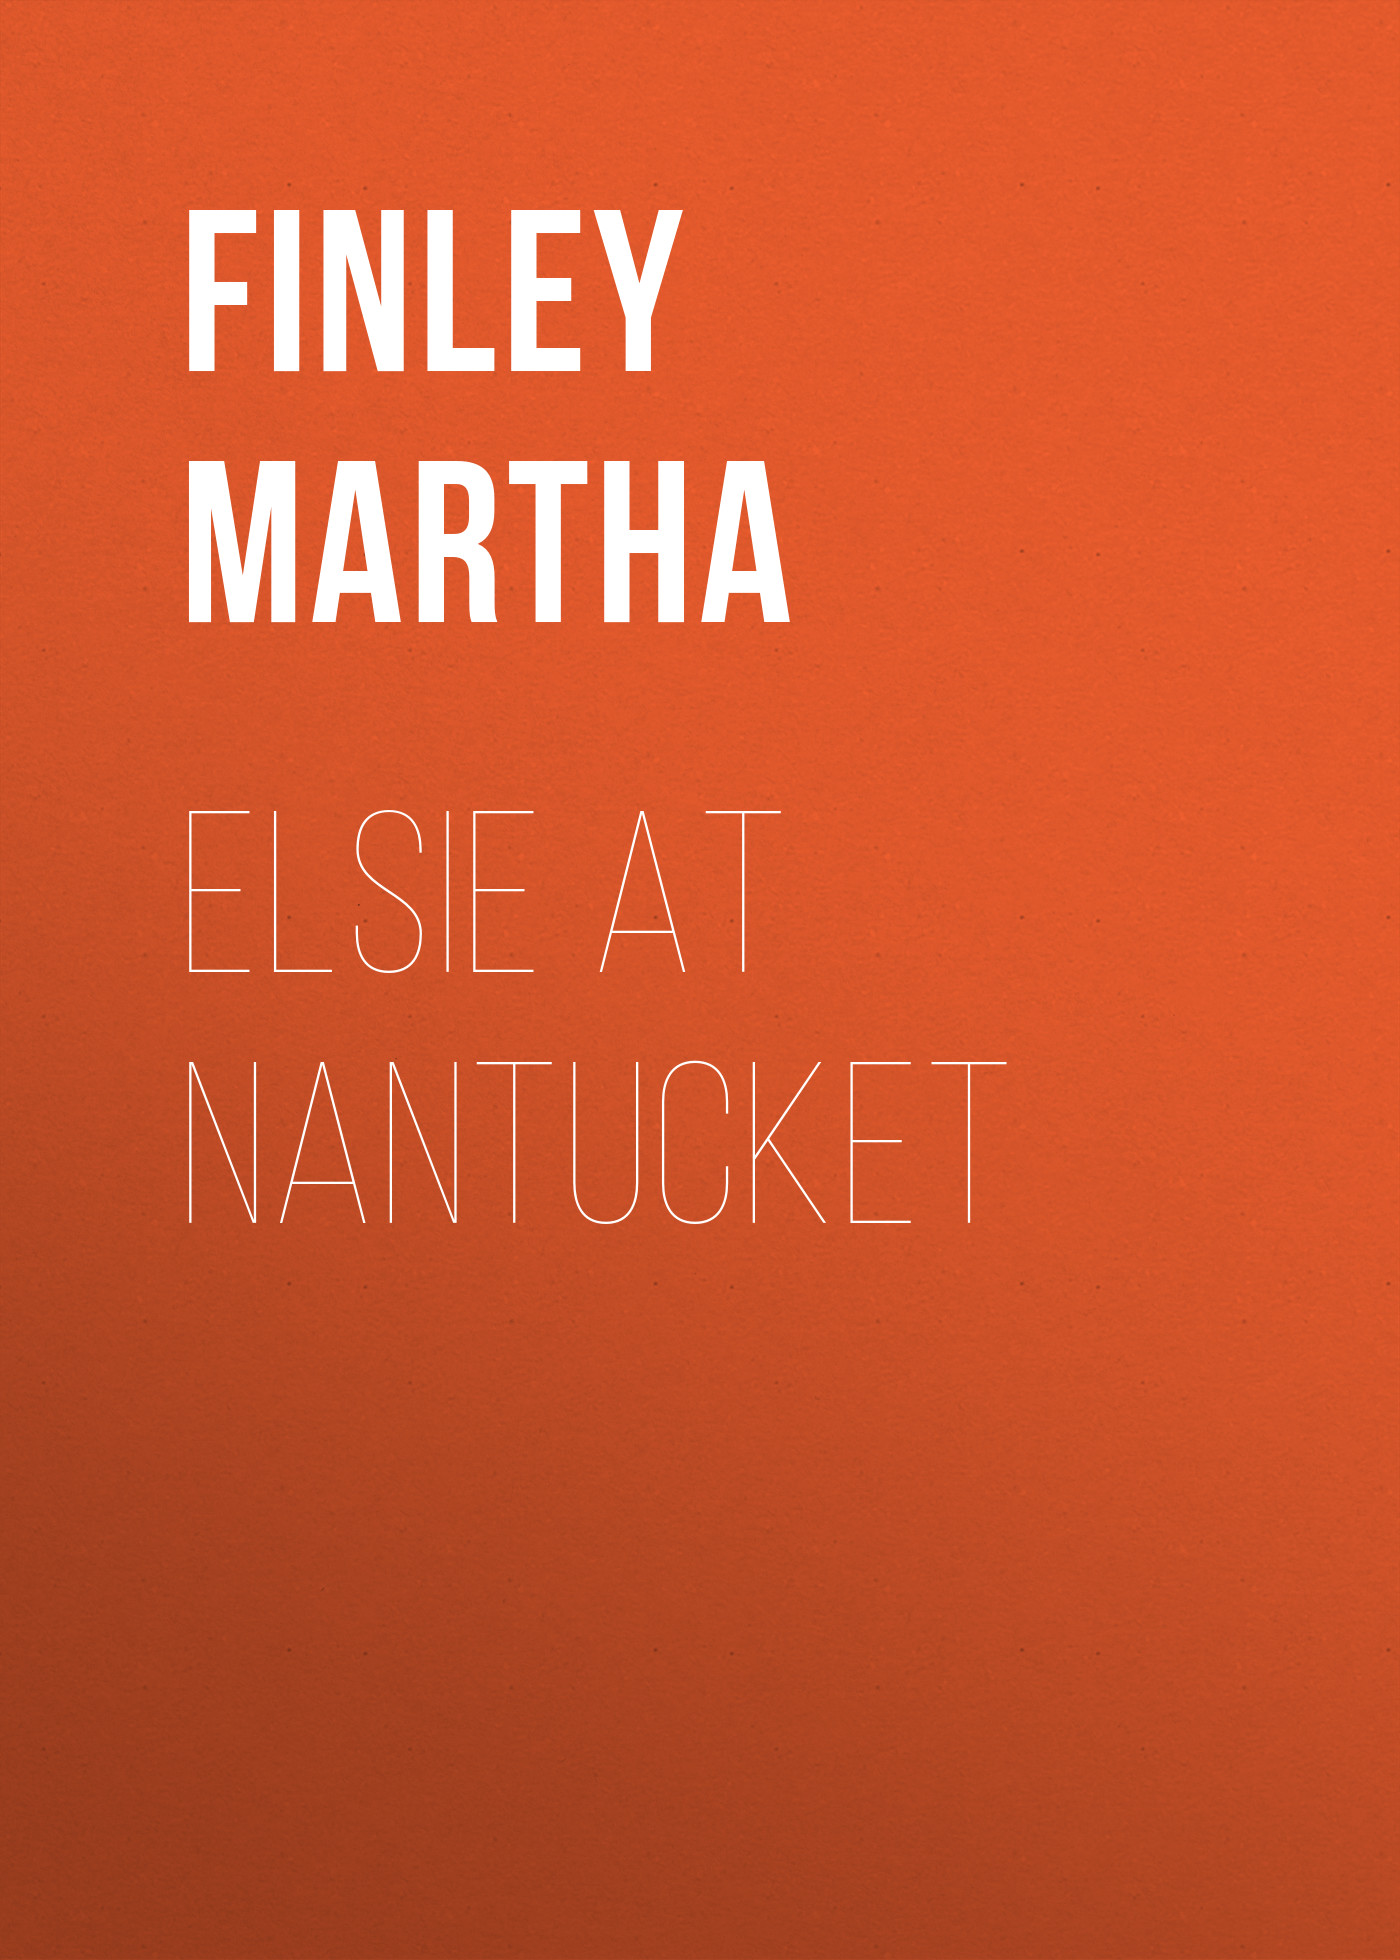 Книга Elsie at Nantucket из серии , созданная Martha Finley, может относится к жанру Зарубежная старинная литература, Зарубежная классика. Стоимость электронной книги Elsie at Nantucket с идентификатором 25202439 составляет 0 руб.